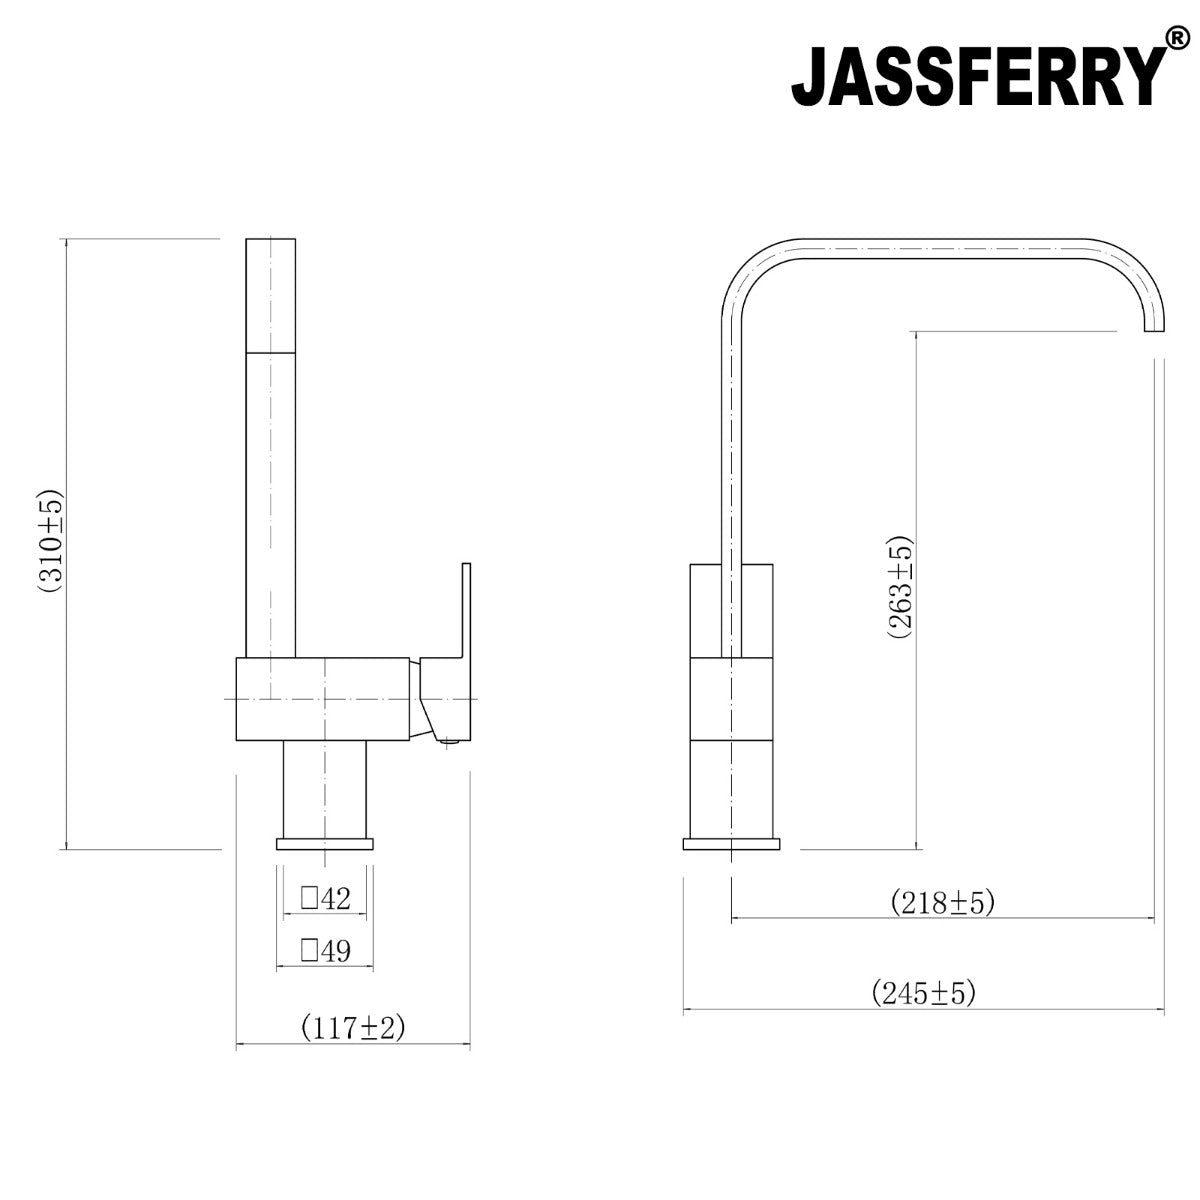 JassferryJASSFERRY New Square Kitchen Sink Tap Mixer Modern Monobloc Brass Swivel SpoutKitchen taps